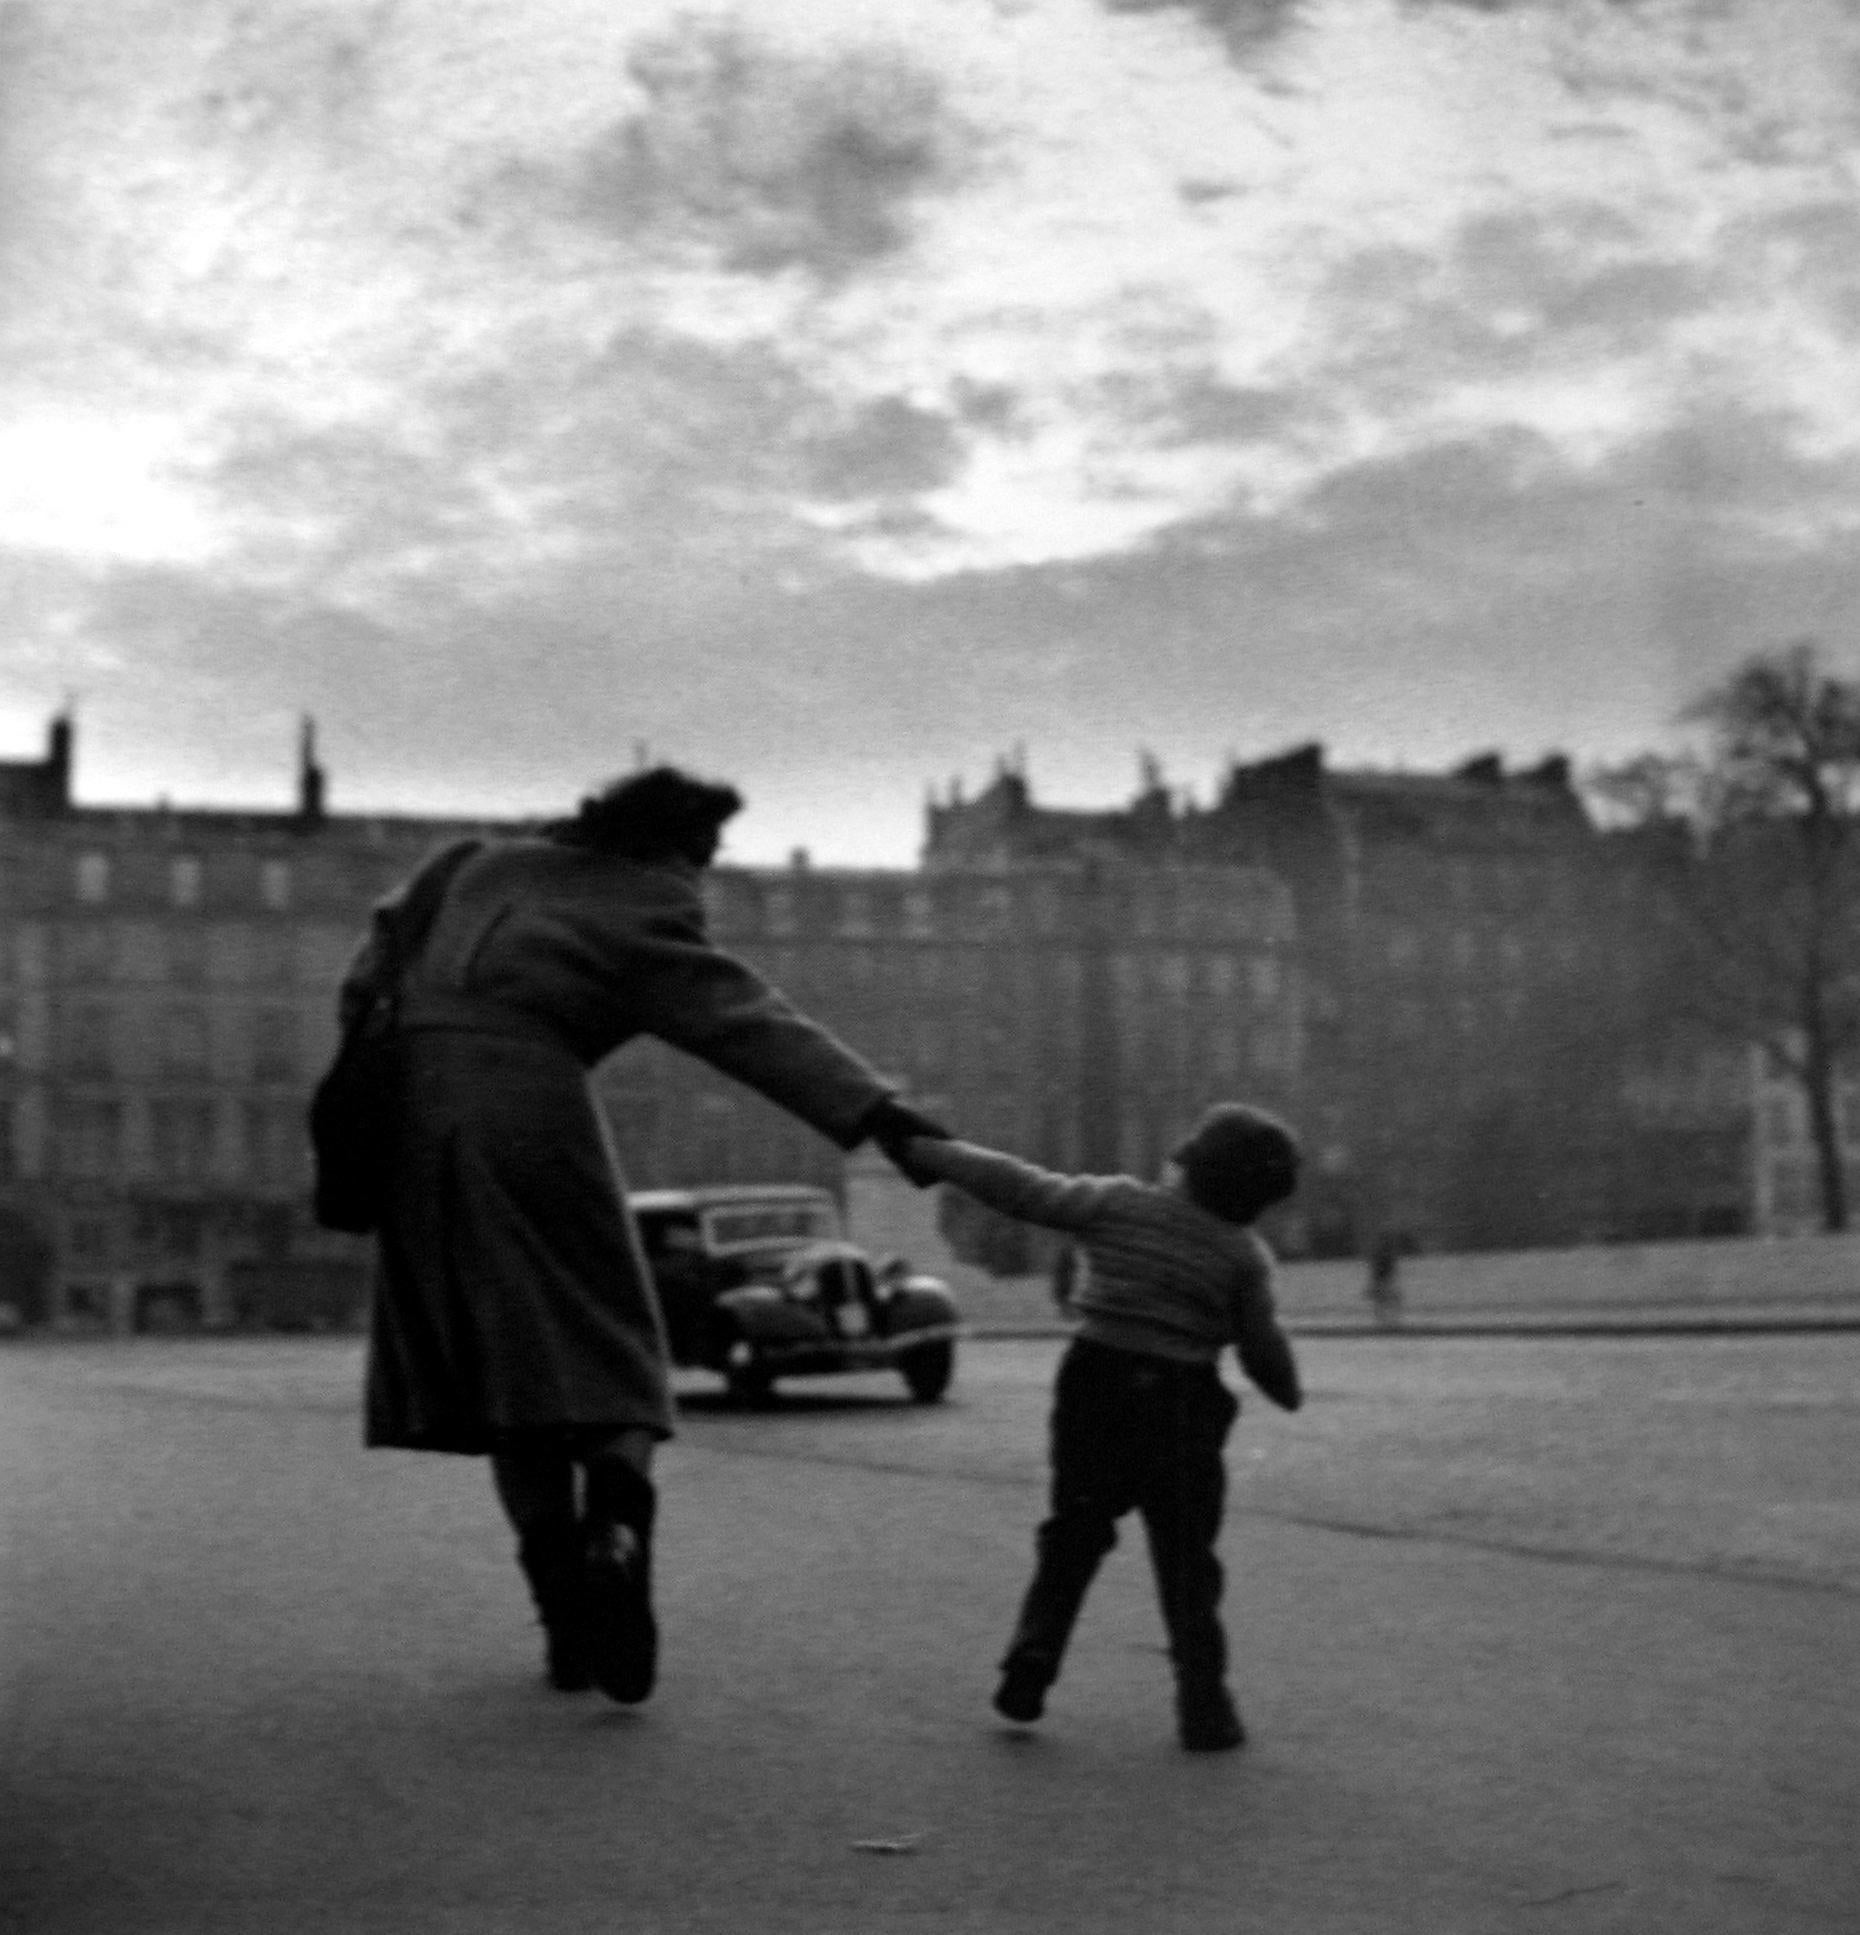 Black and White Photograph Louis Stettner - "Traverser la Seine" Mère et Child, Paris